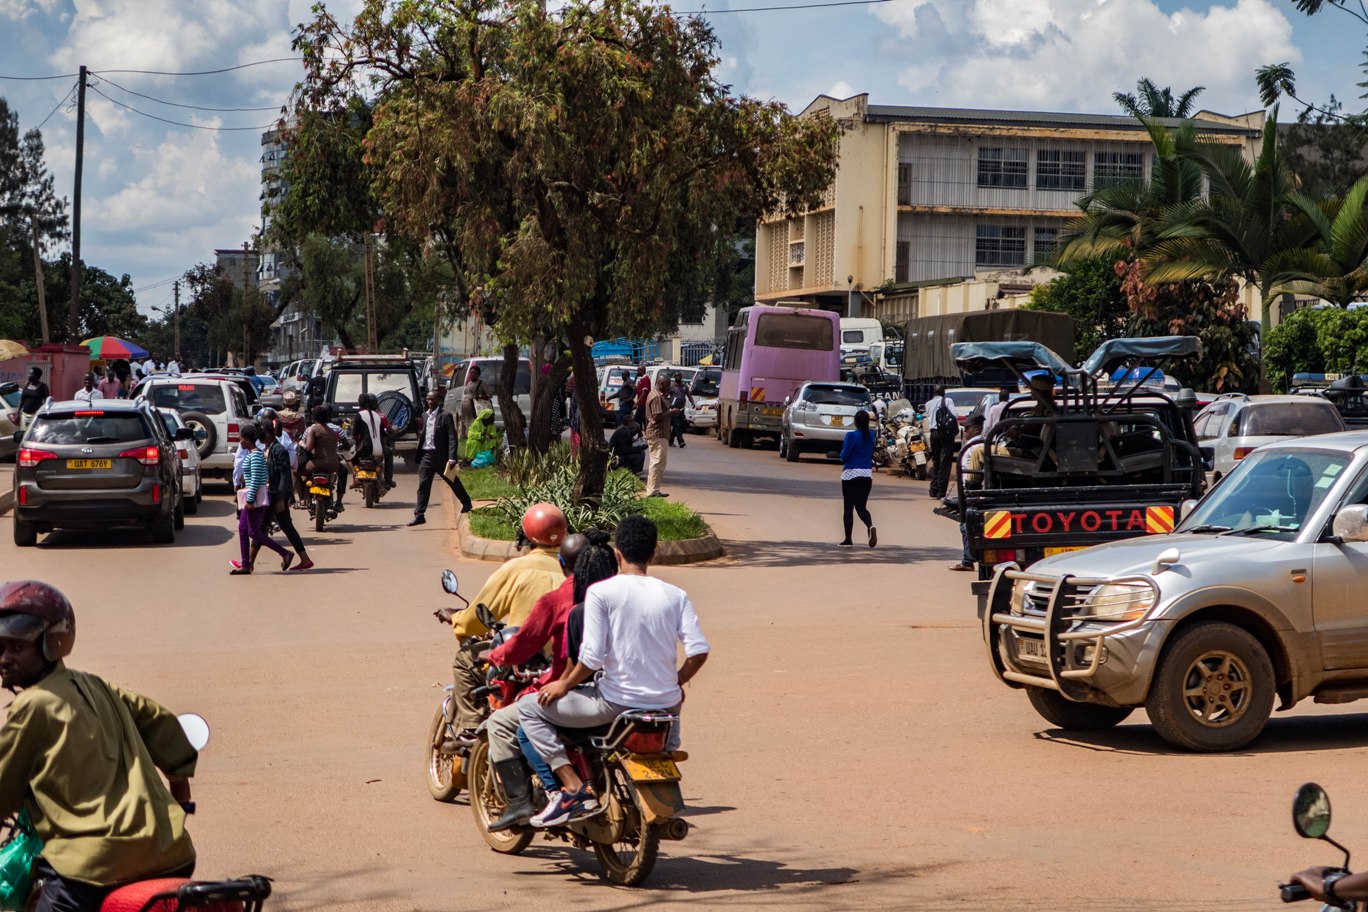 Traffic in Kampala Uganda on bicycle.